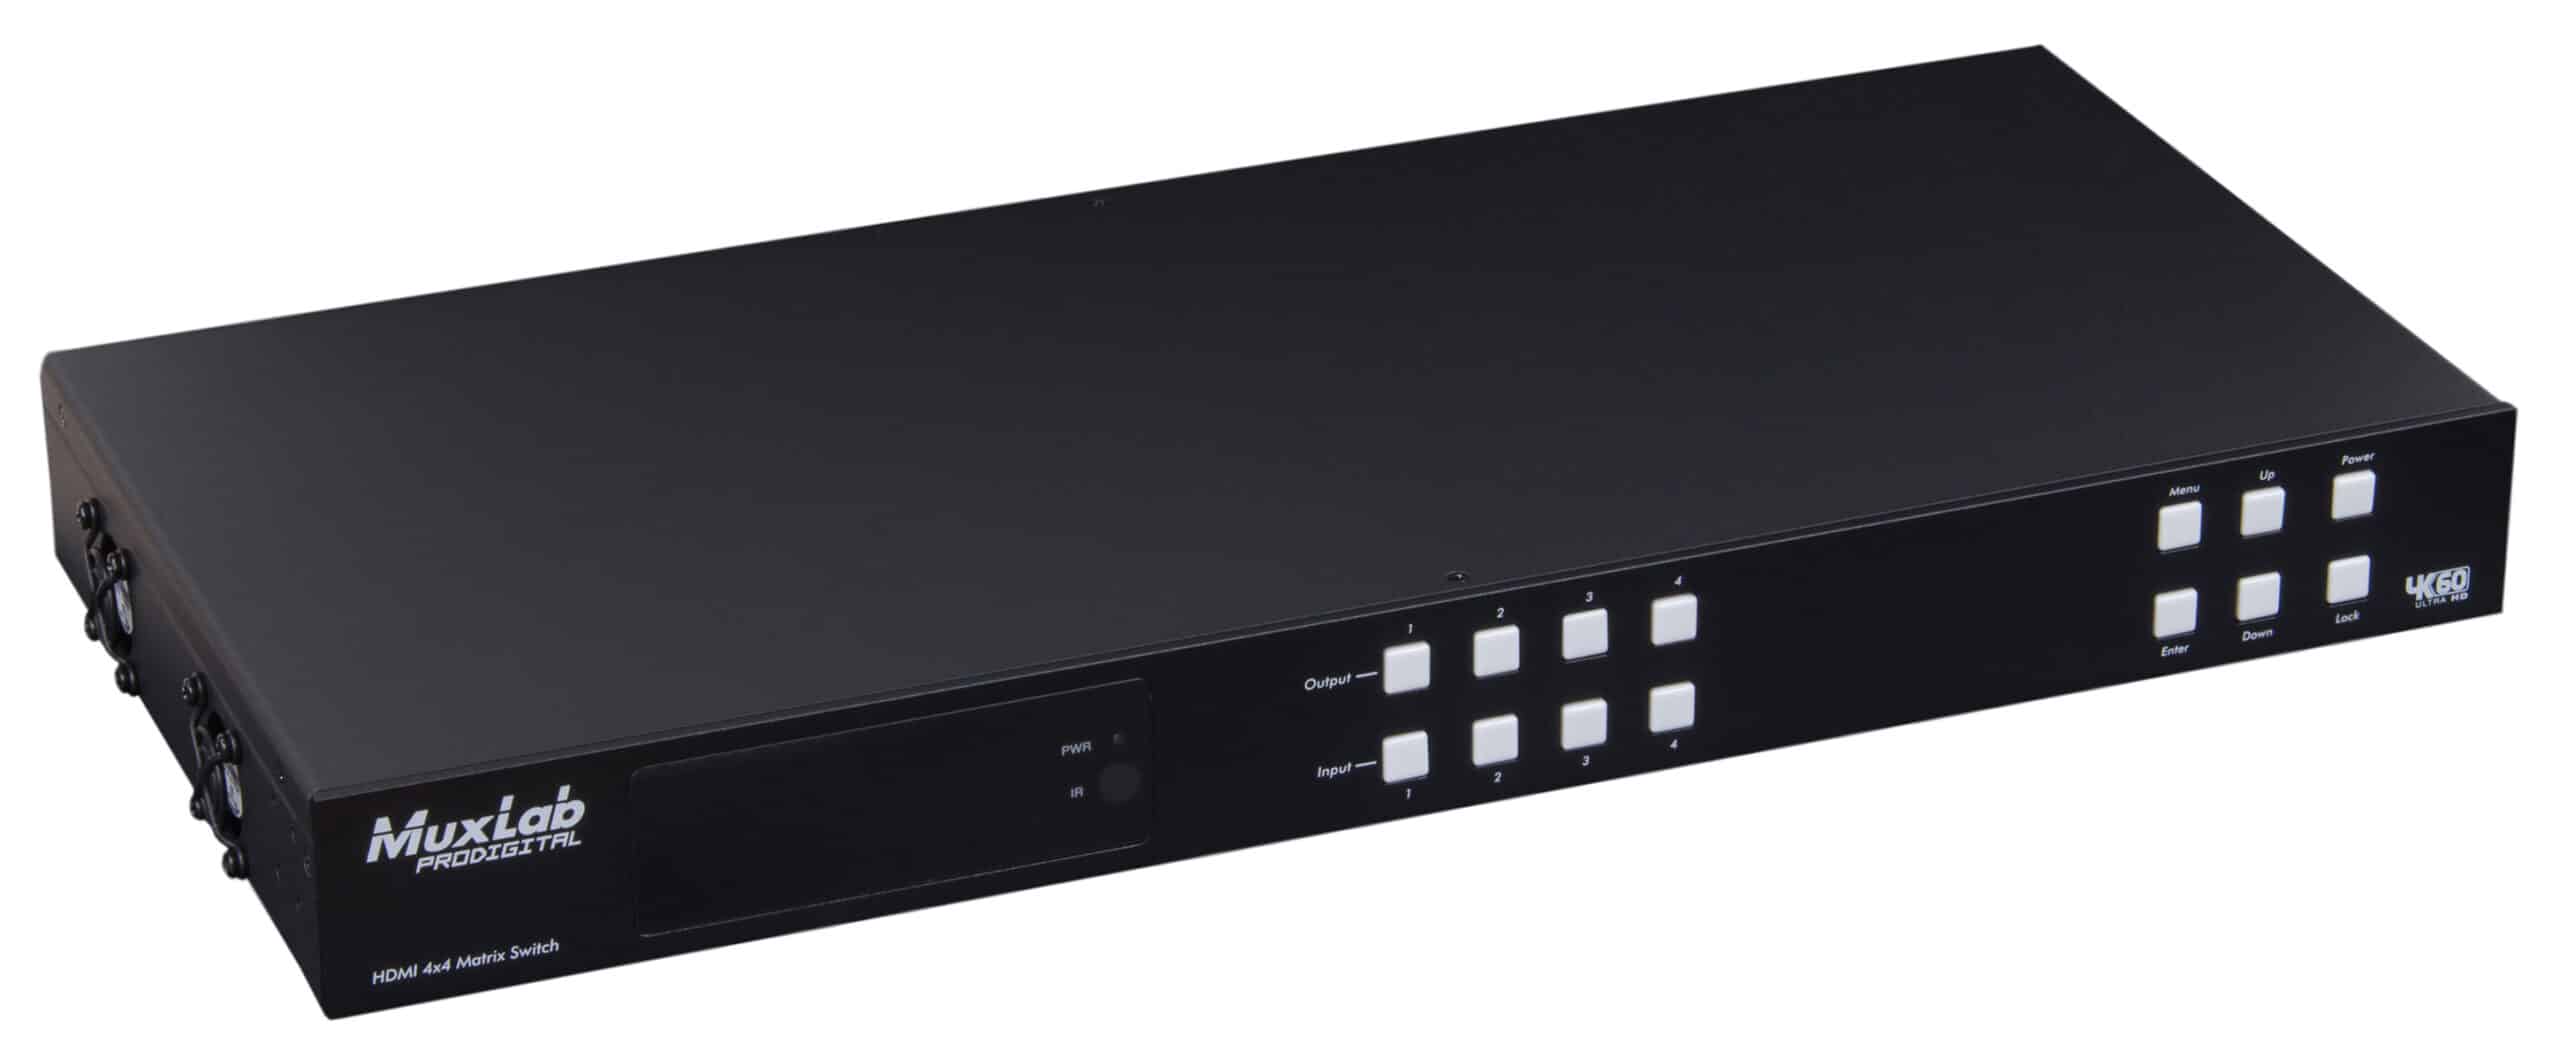 HDMI 4X4 Matrix SWX Kit, HDBT, PoC, 4K/60 - Muxlab